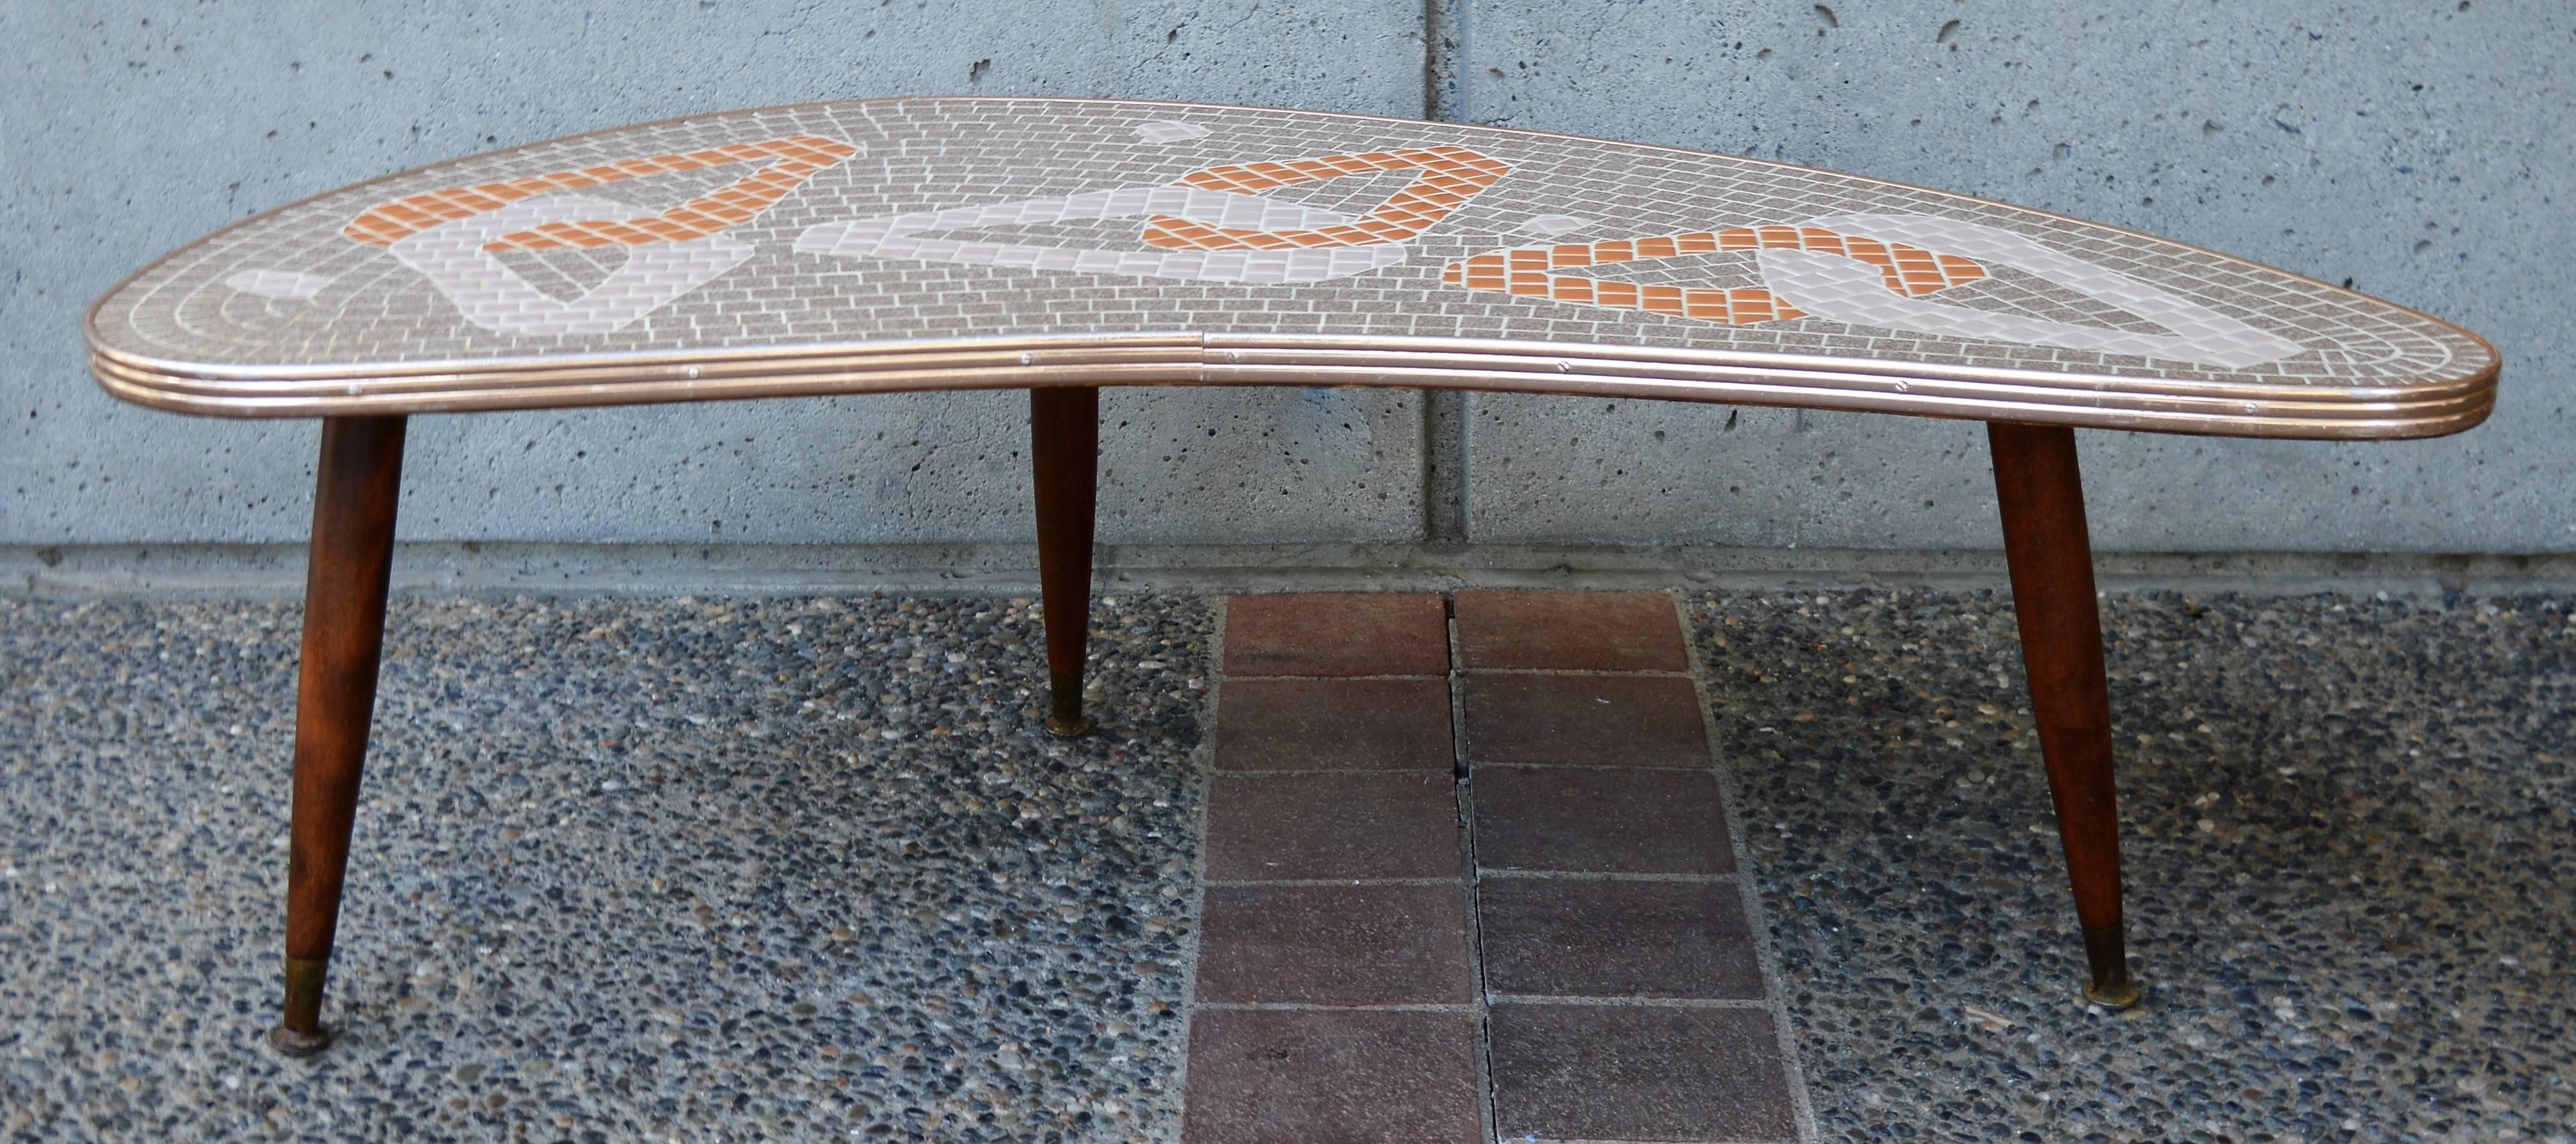 1950s Mid-Century Modern Atomic Era Tile Mosaic Boomerang Coffee Table 3